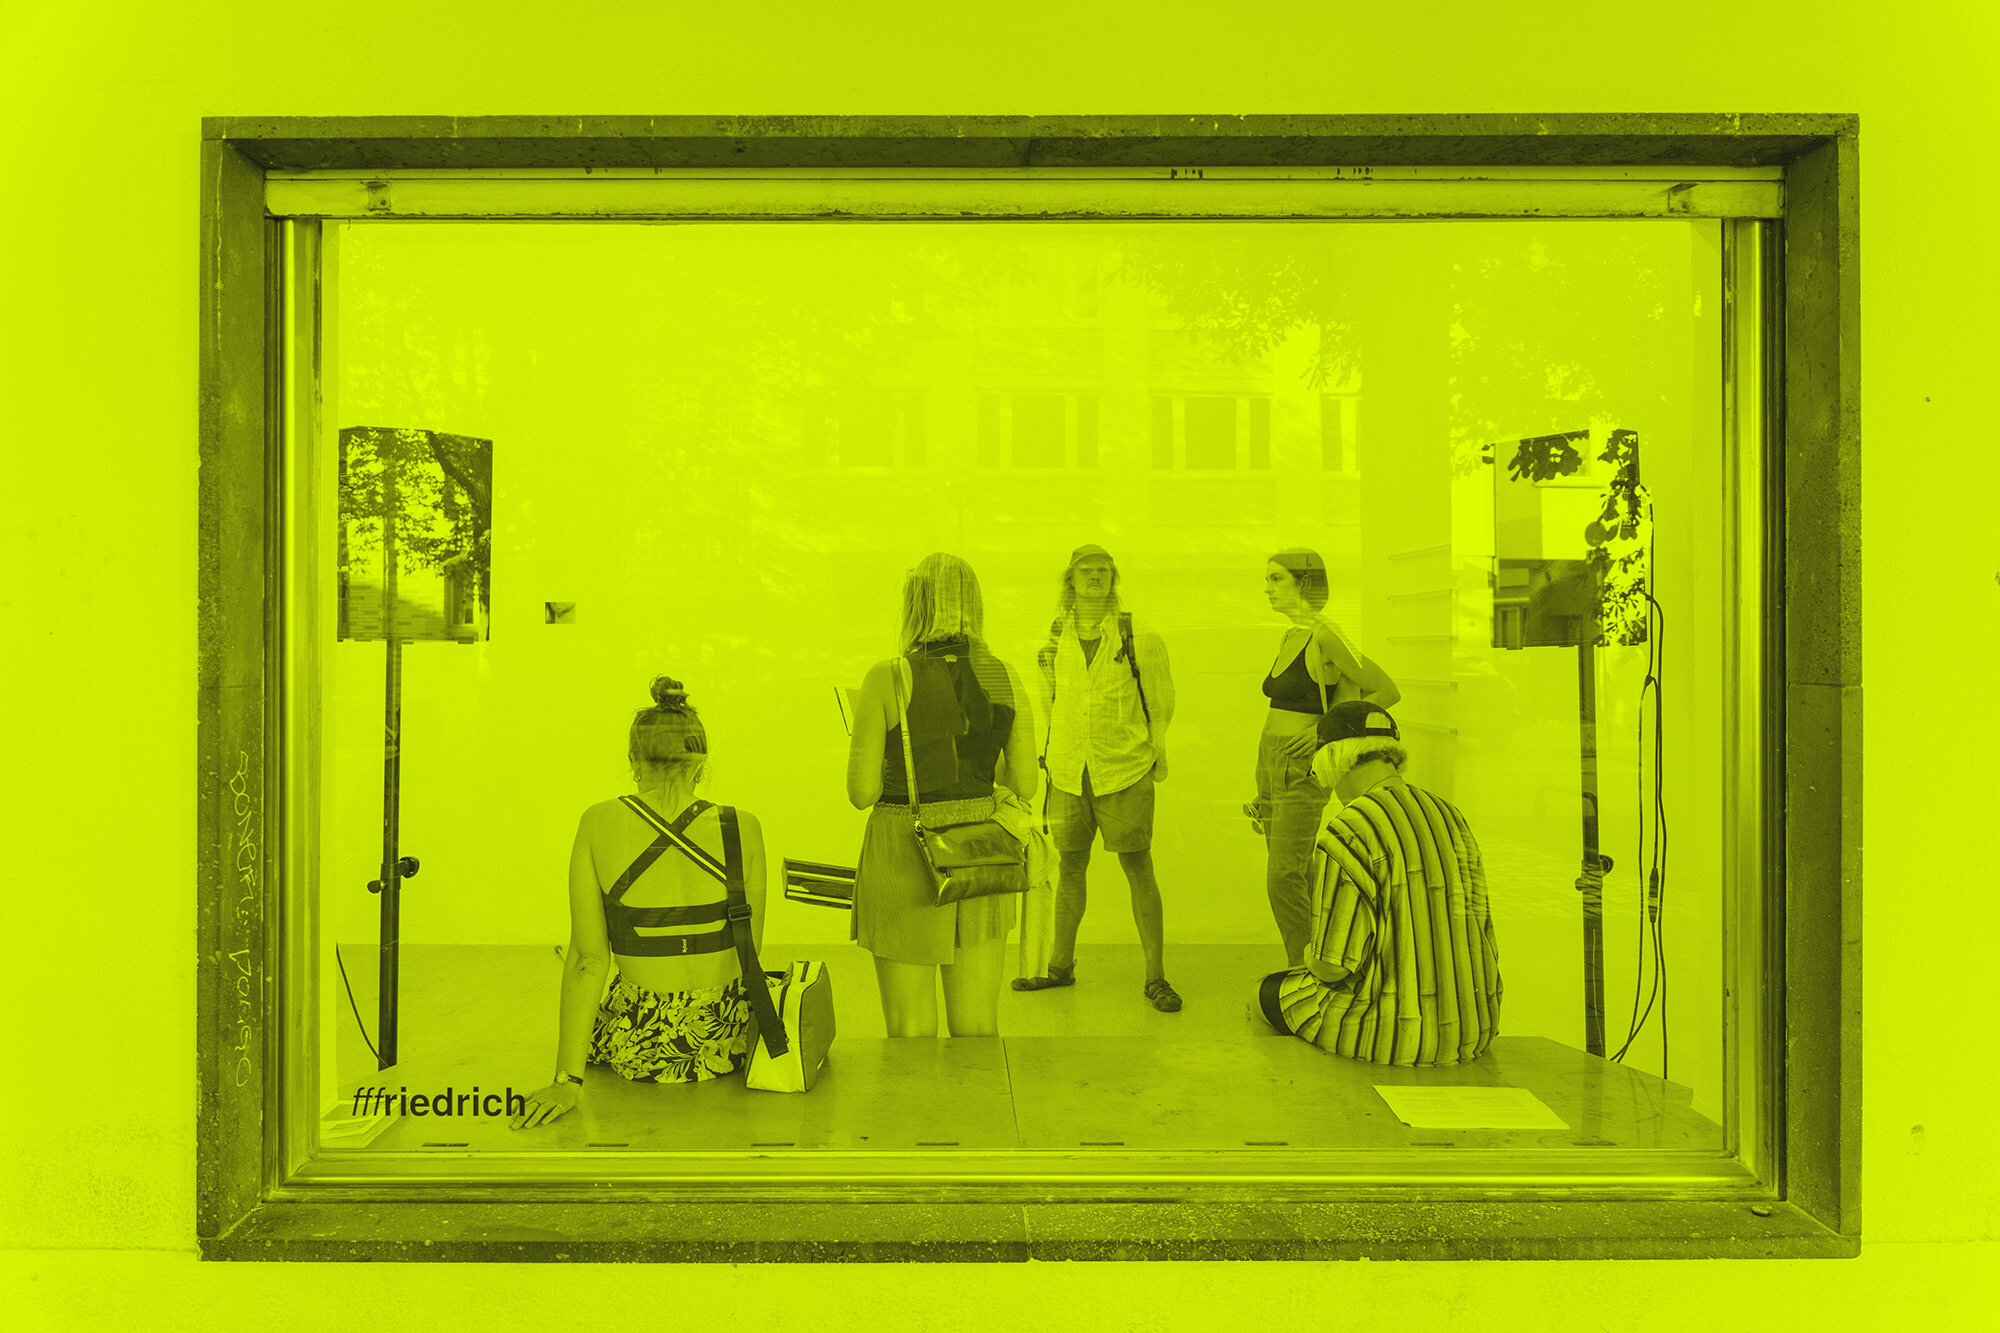 Ausstellung der Curatorial Studies im Rahmen von Gasthof im Projektraum fffriedrich, 2022